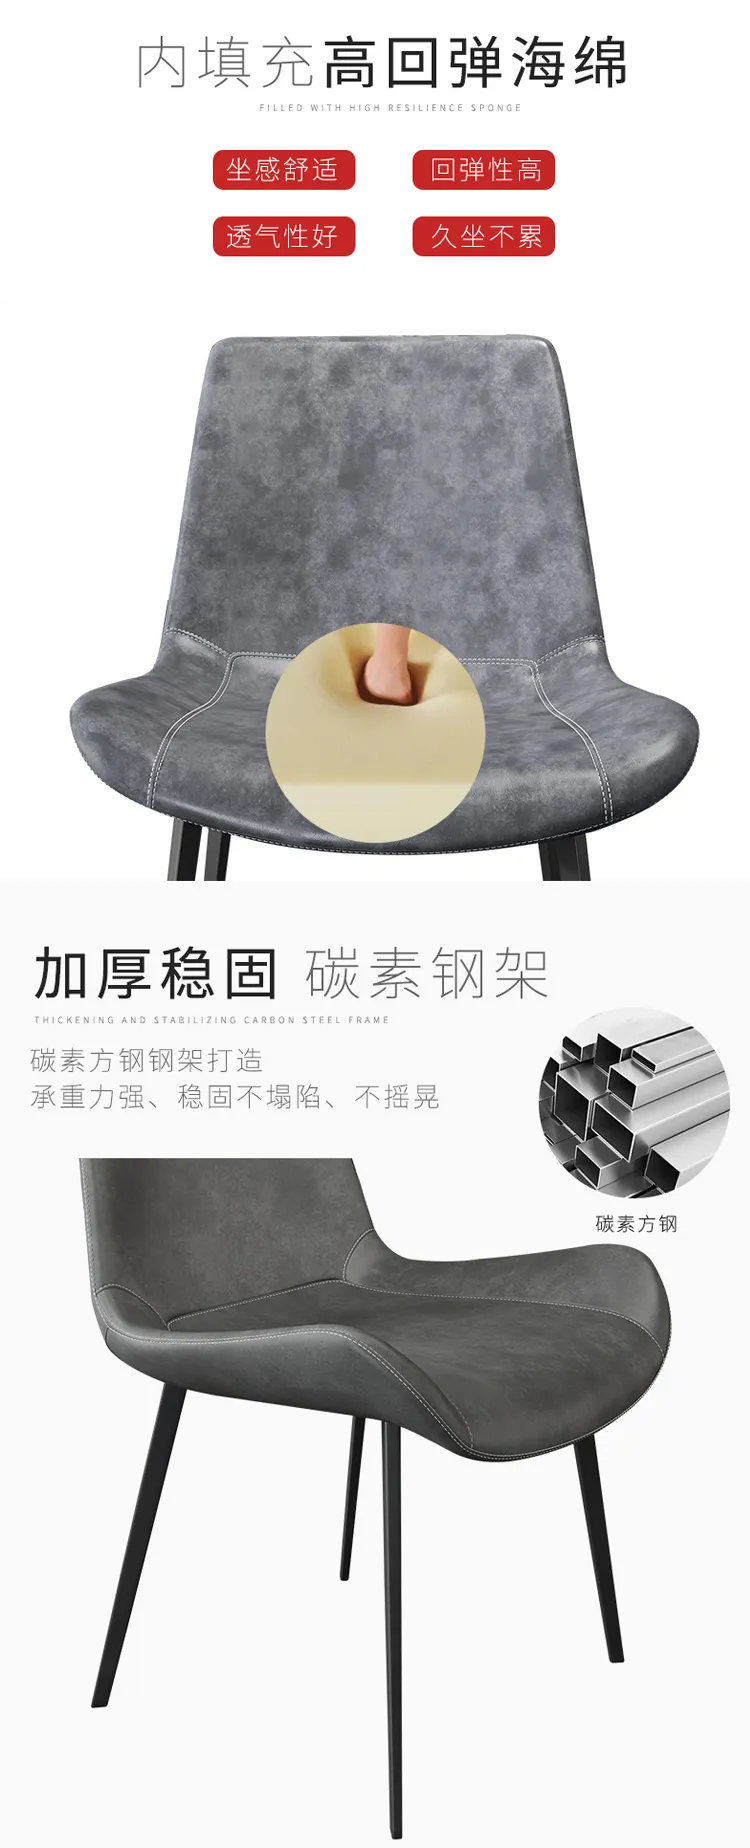 华松居 北欧餐椅现代简约家用时尚设计师创意 CY611-29#A(图5)